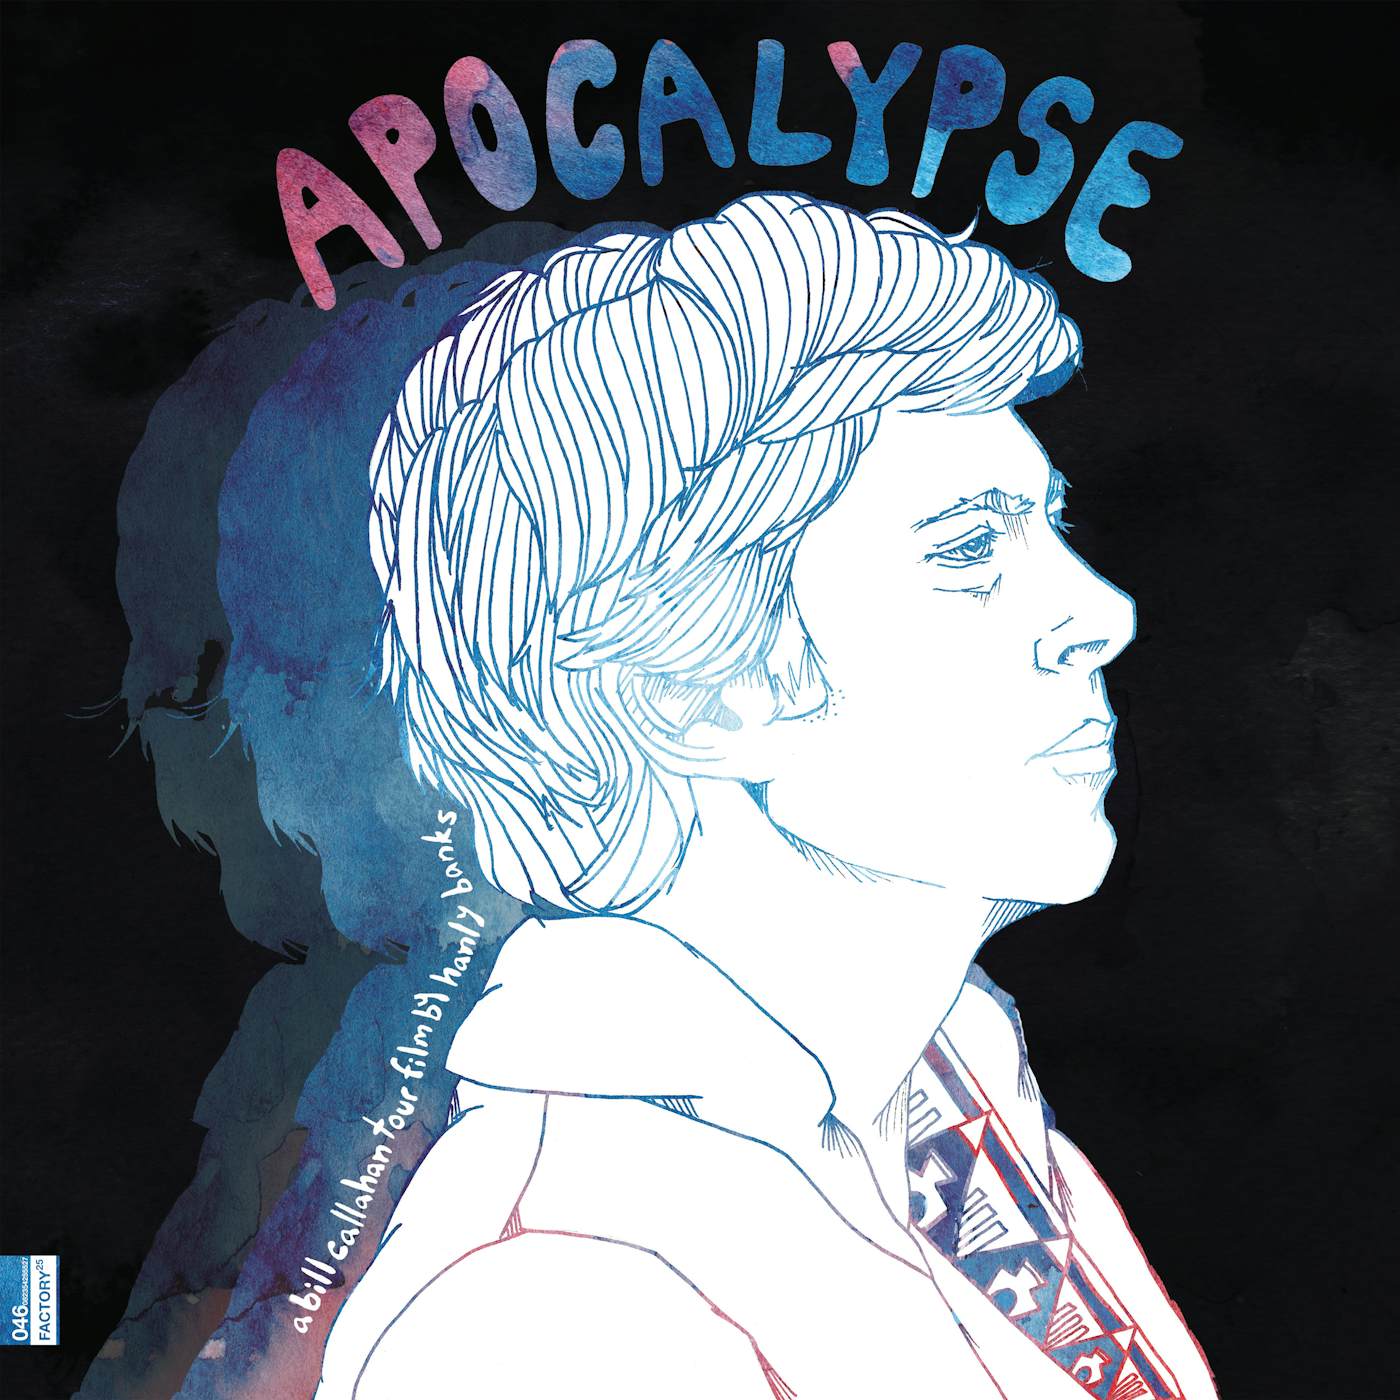 Apocalypse: A Bill Callahan Tour Vinyl Record